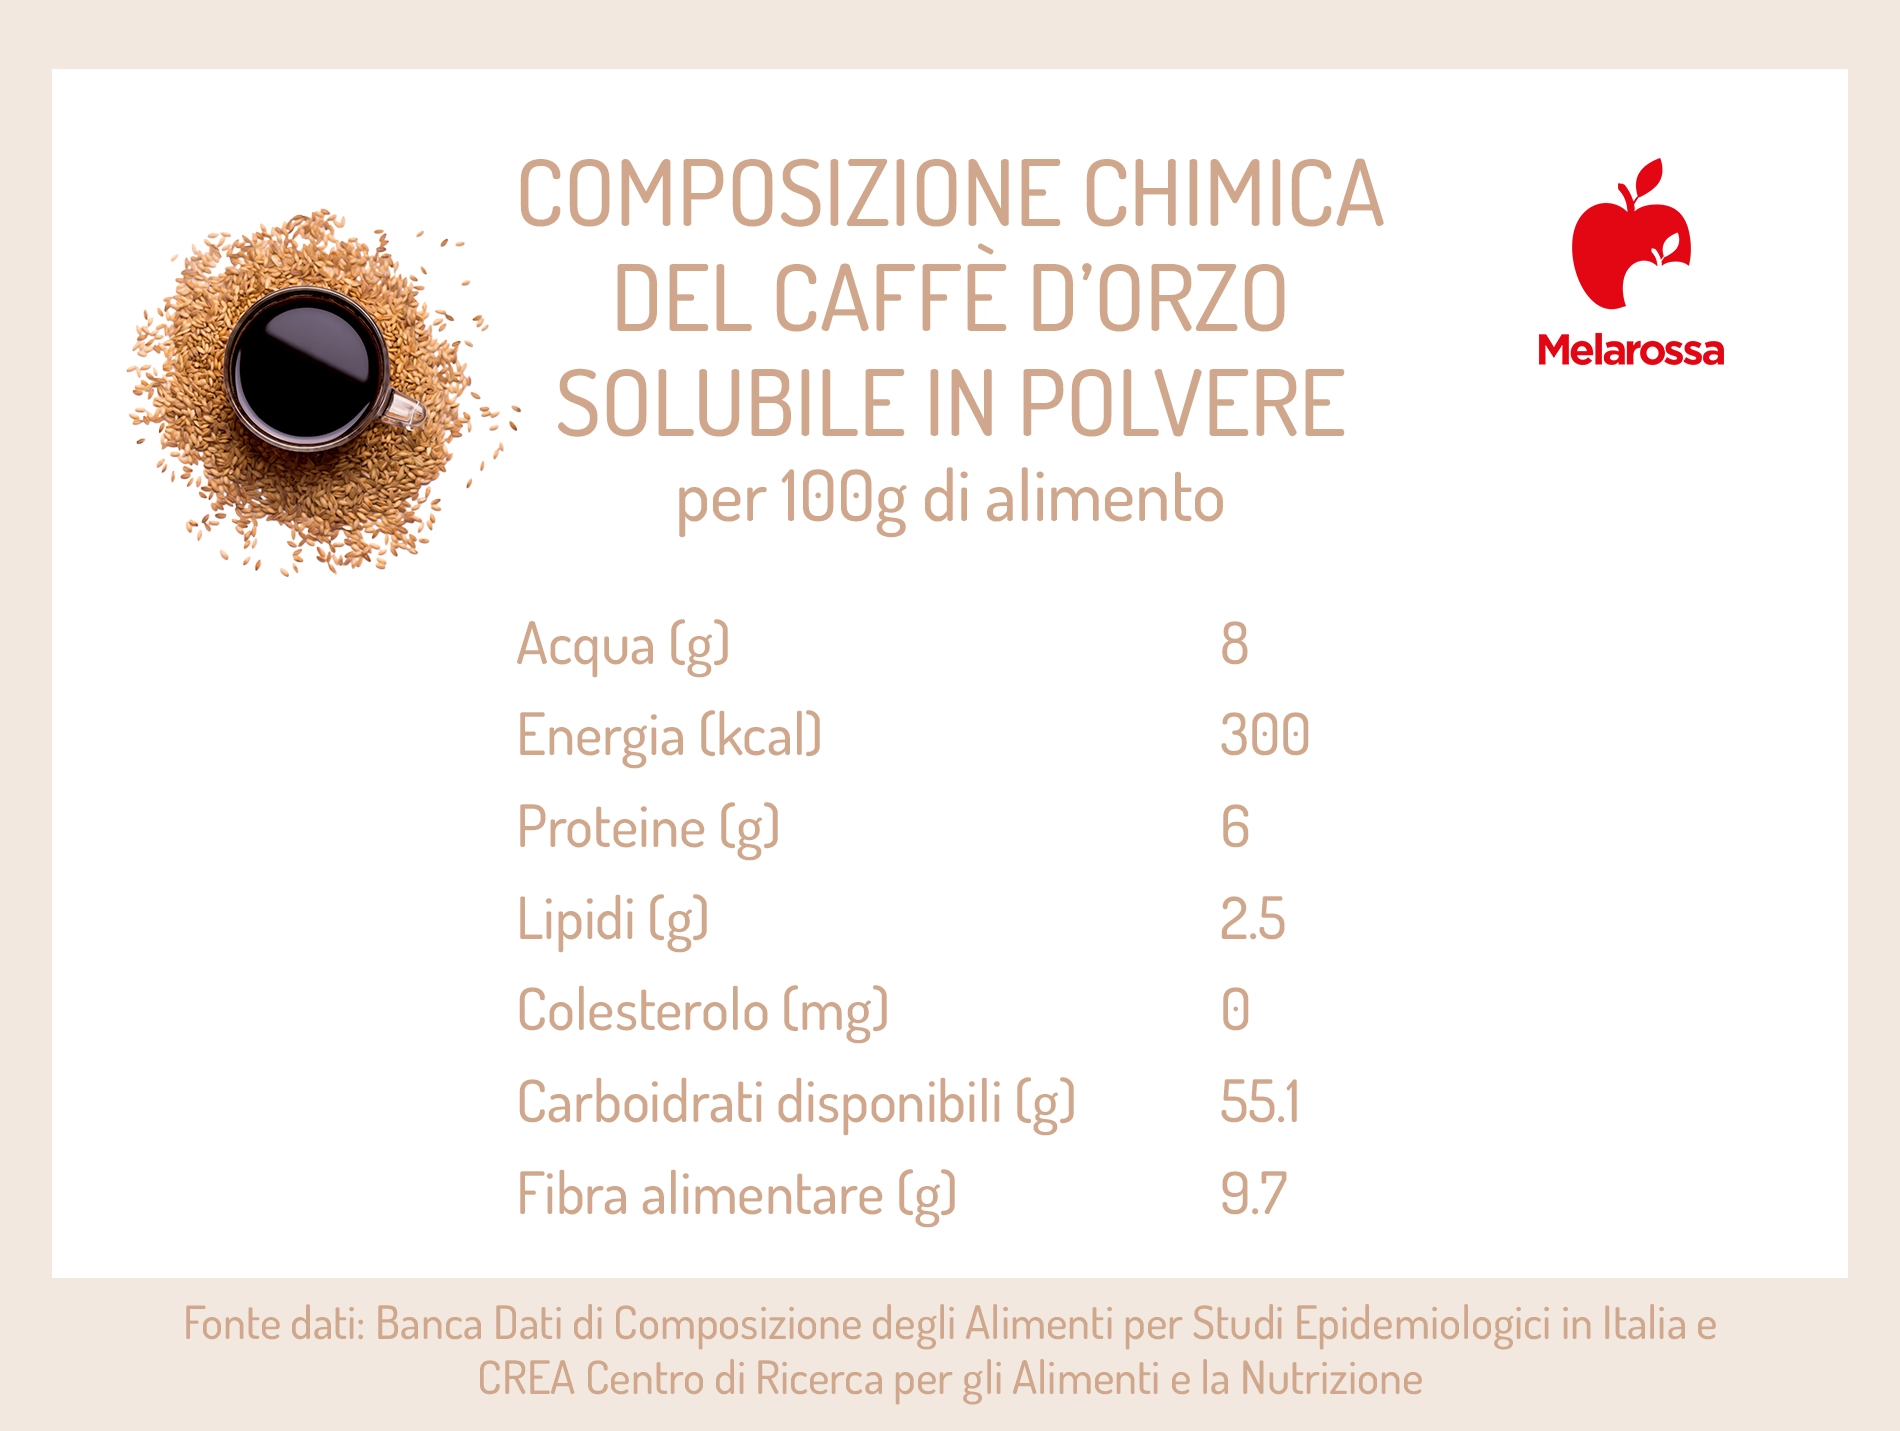 Caffè d'orzo: calorie e composzione